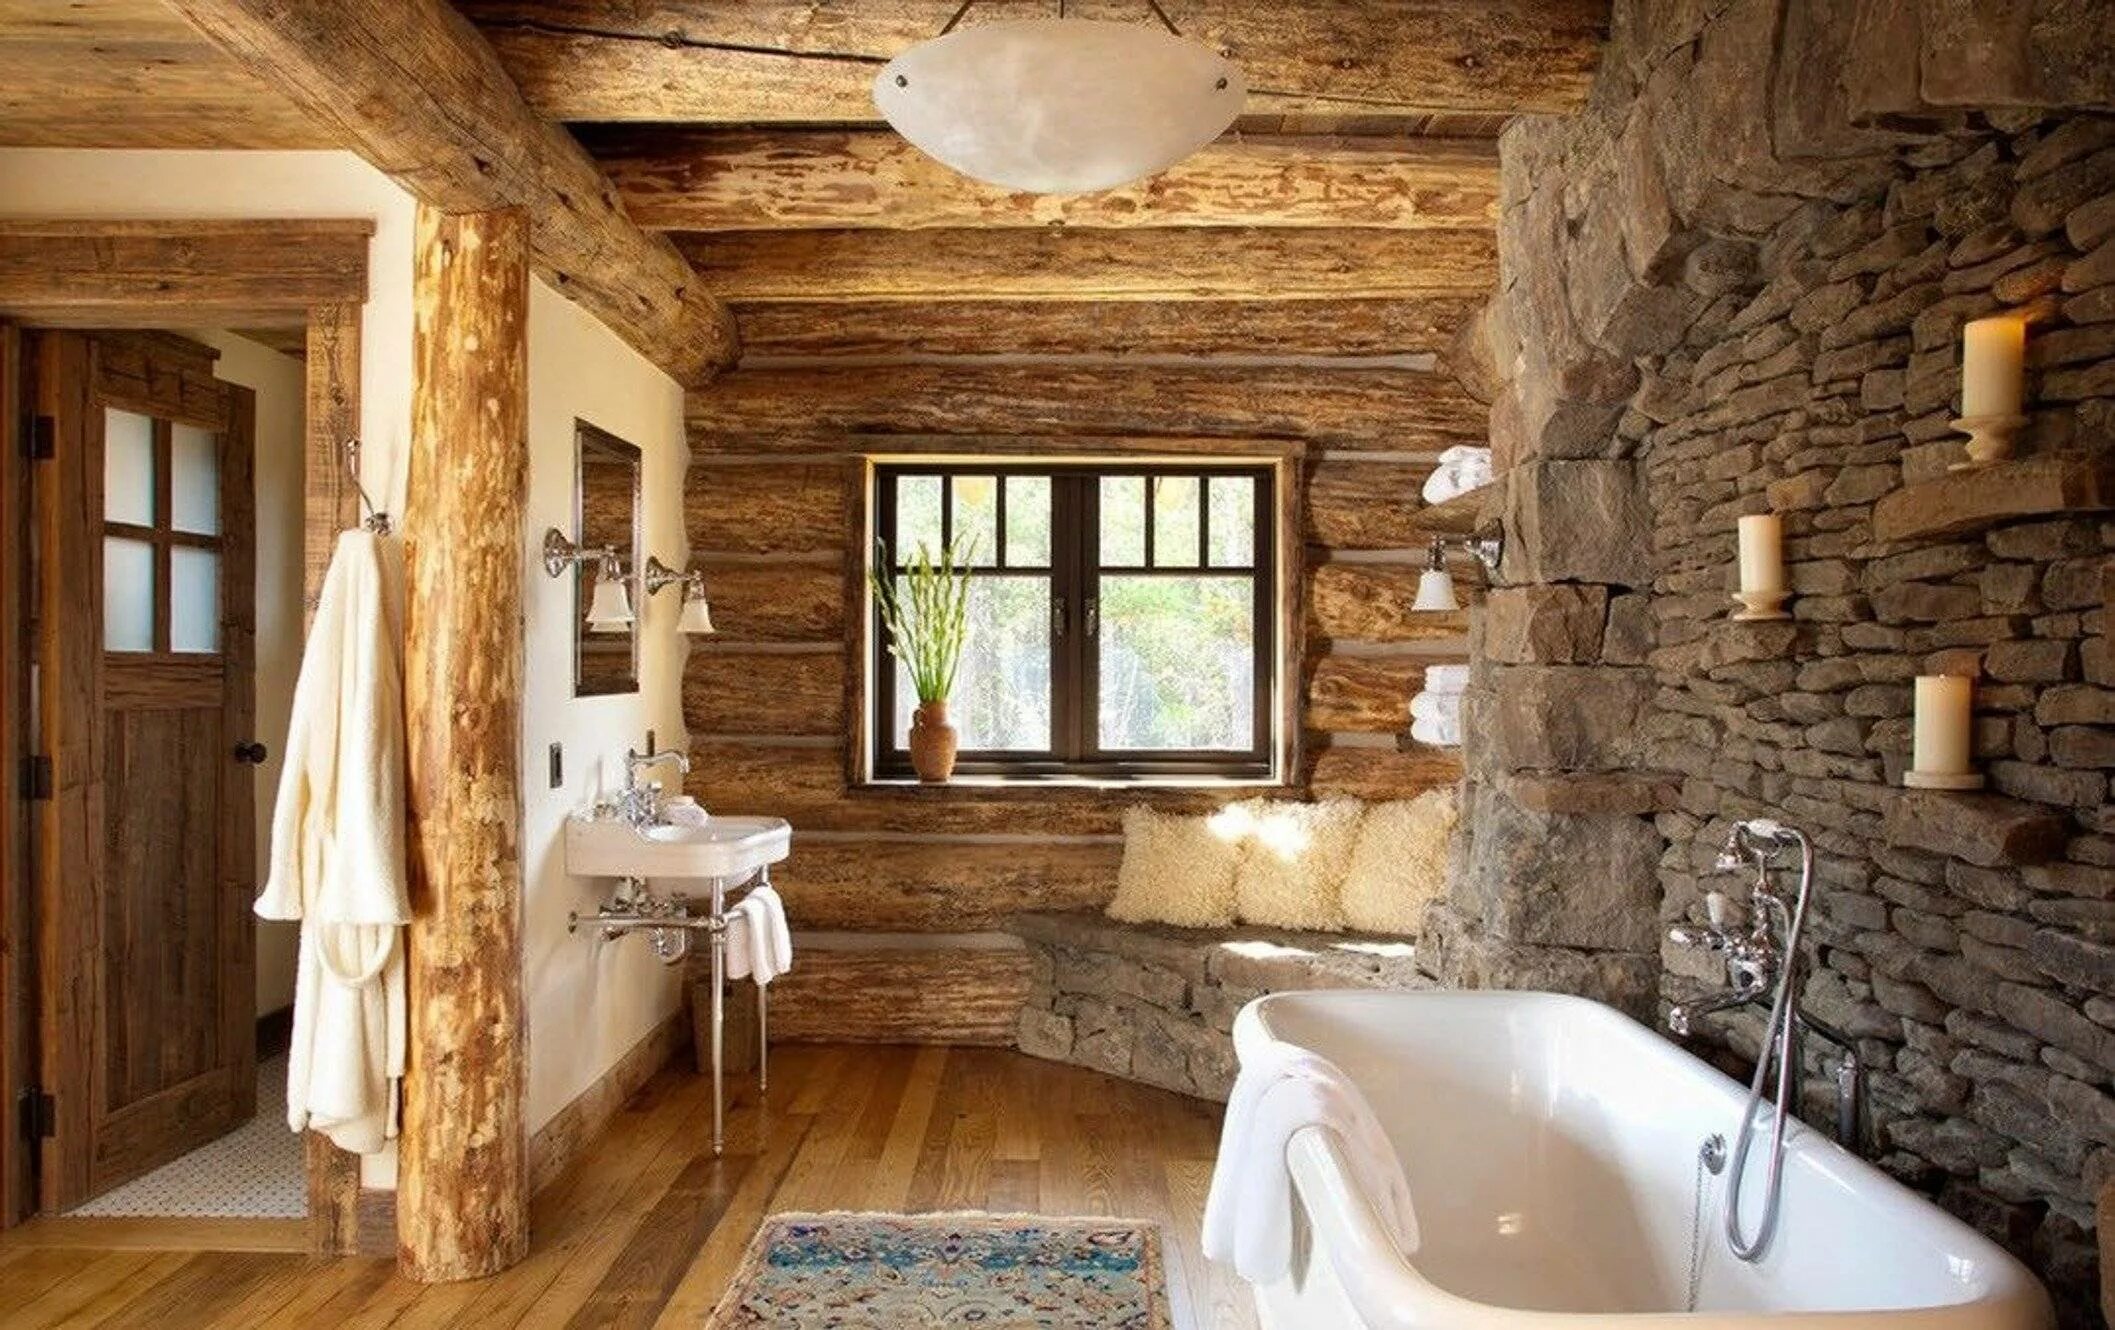 Дизайн комнат в деревянном доме. Сан УЗЕЛТВ деревенском стиле. Отделка комнаты. Ванная в деревянном доме. Ваееая в деревянном доме.